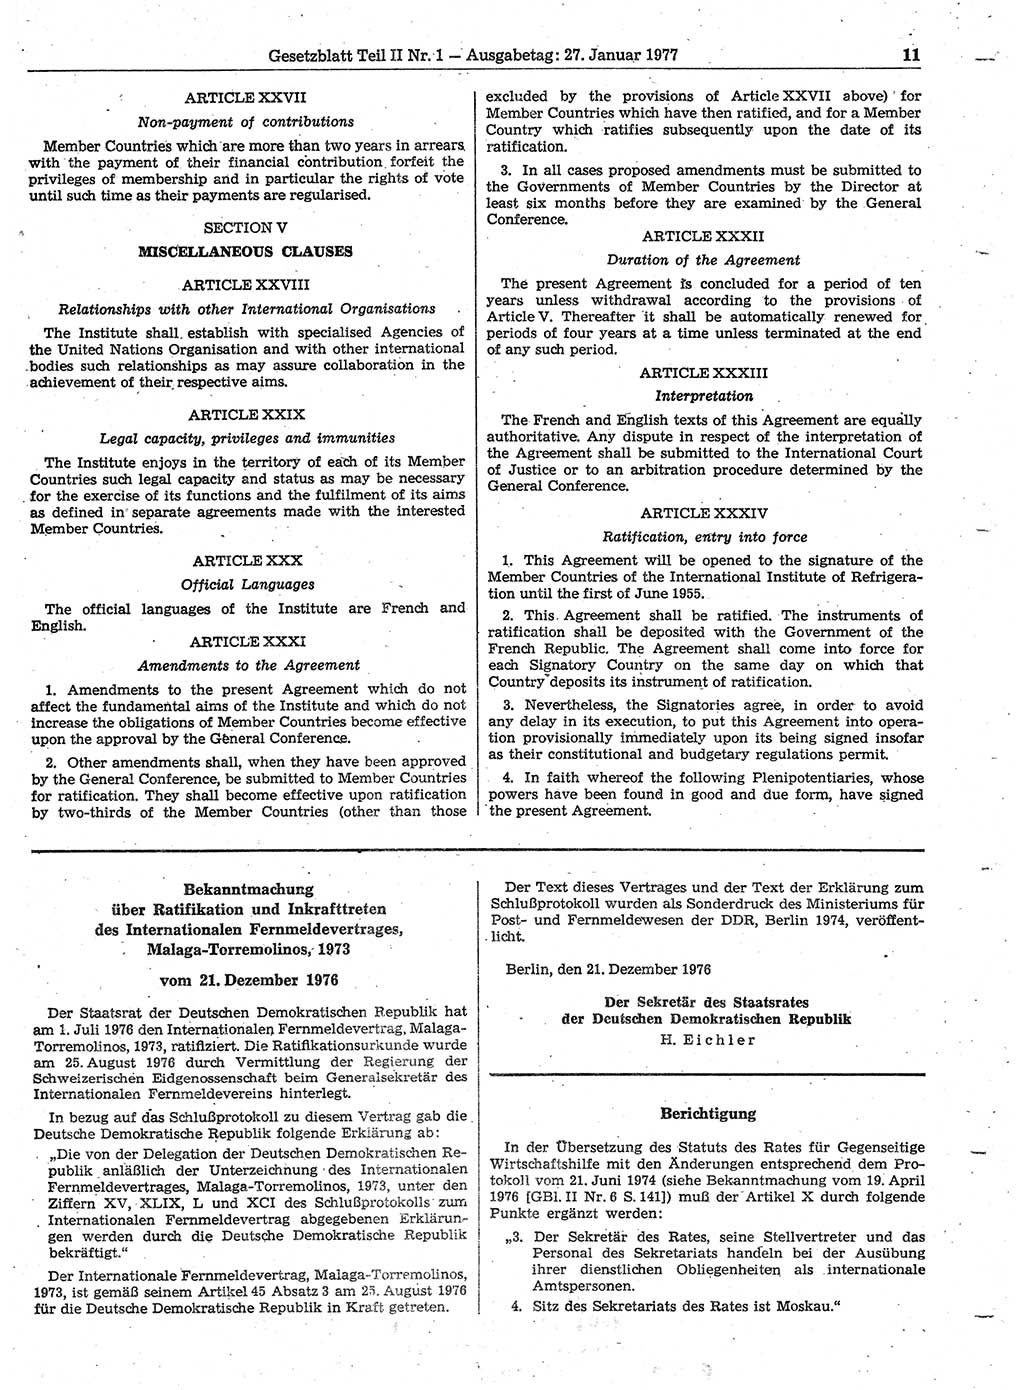 Gesetzblatt (GBl.) der Deutschen Demokratischen Republik (DDR) Teil ⅠⅠ 1977, Seite 11 (GBl. DDR ⅠⅠ 1977, S. 11)